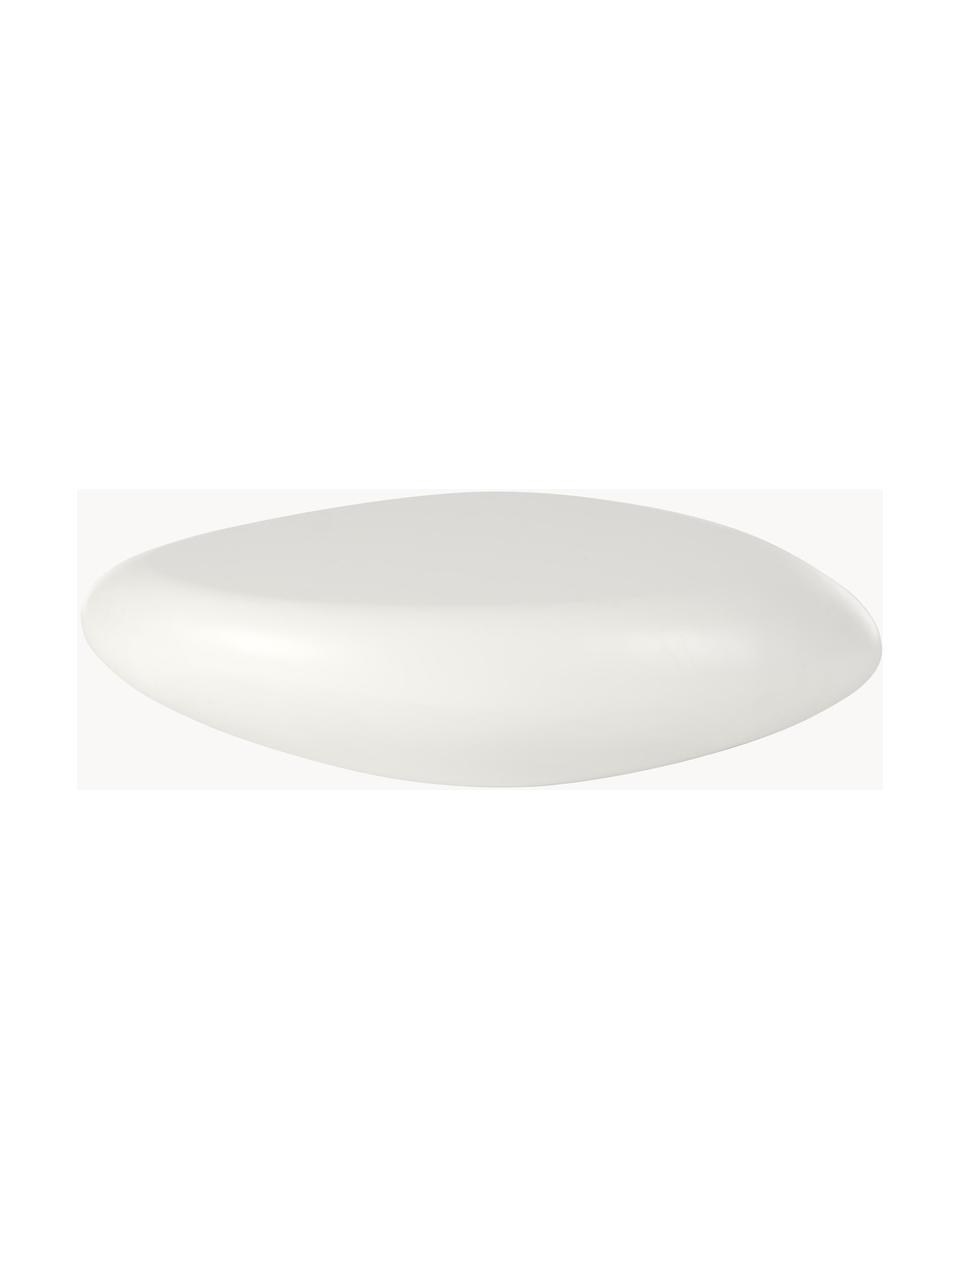 Ovaler Couchtisch Pietra in Stein-Form, Glasfaserkunststoff, lackiert, Weiss, B 116 x T 77 cm